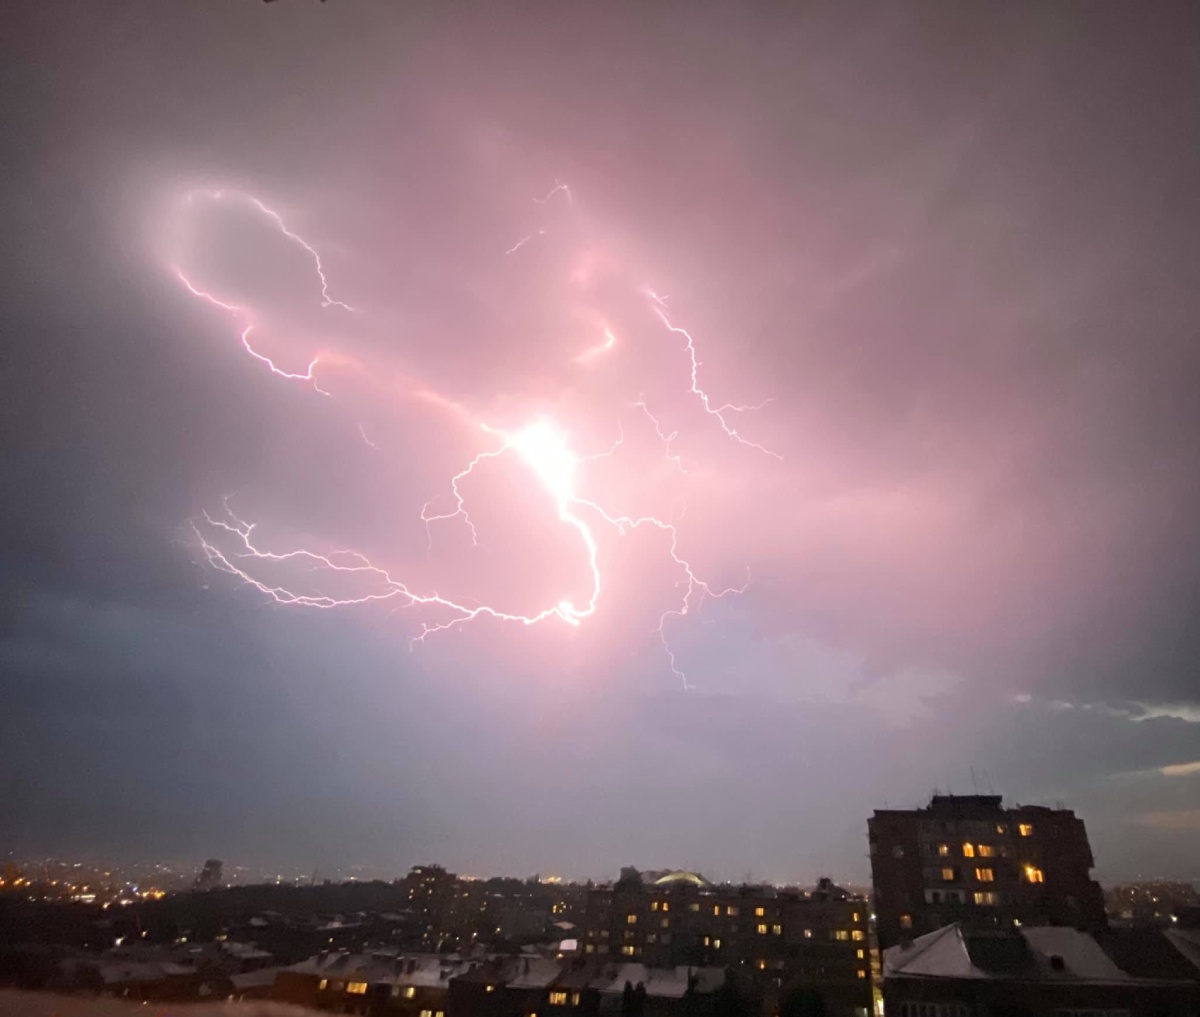 photo-contest-week-30-2021-Tigran-Matulyan-lightning-strike